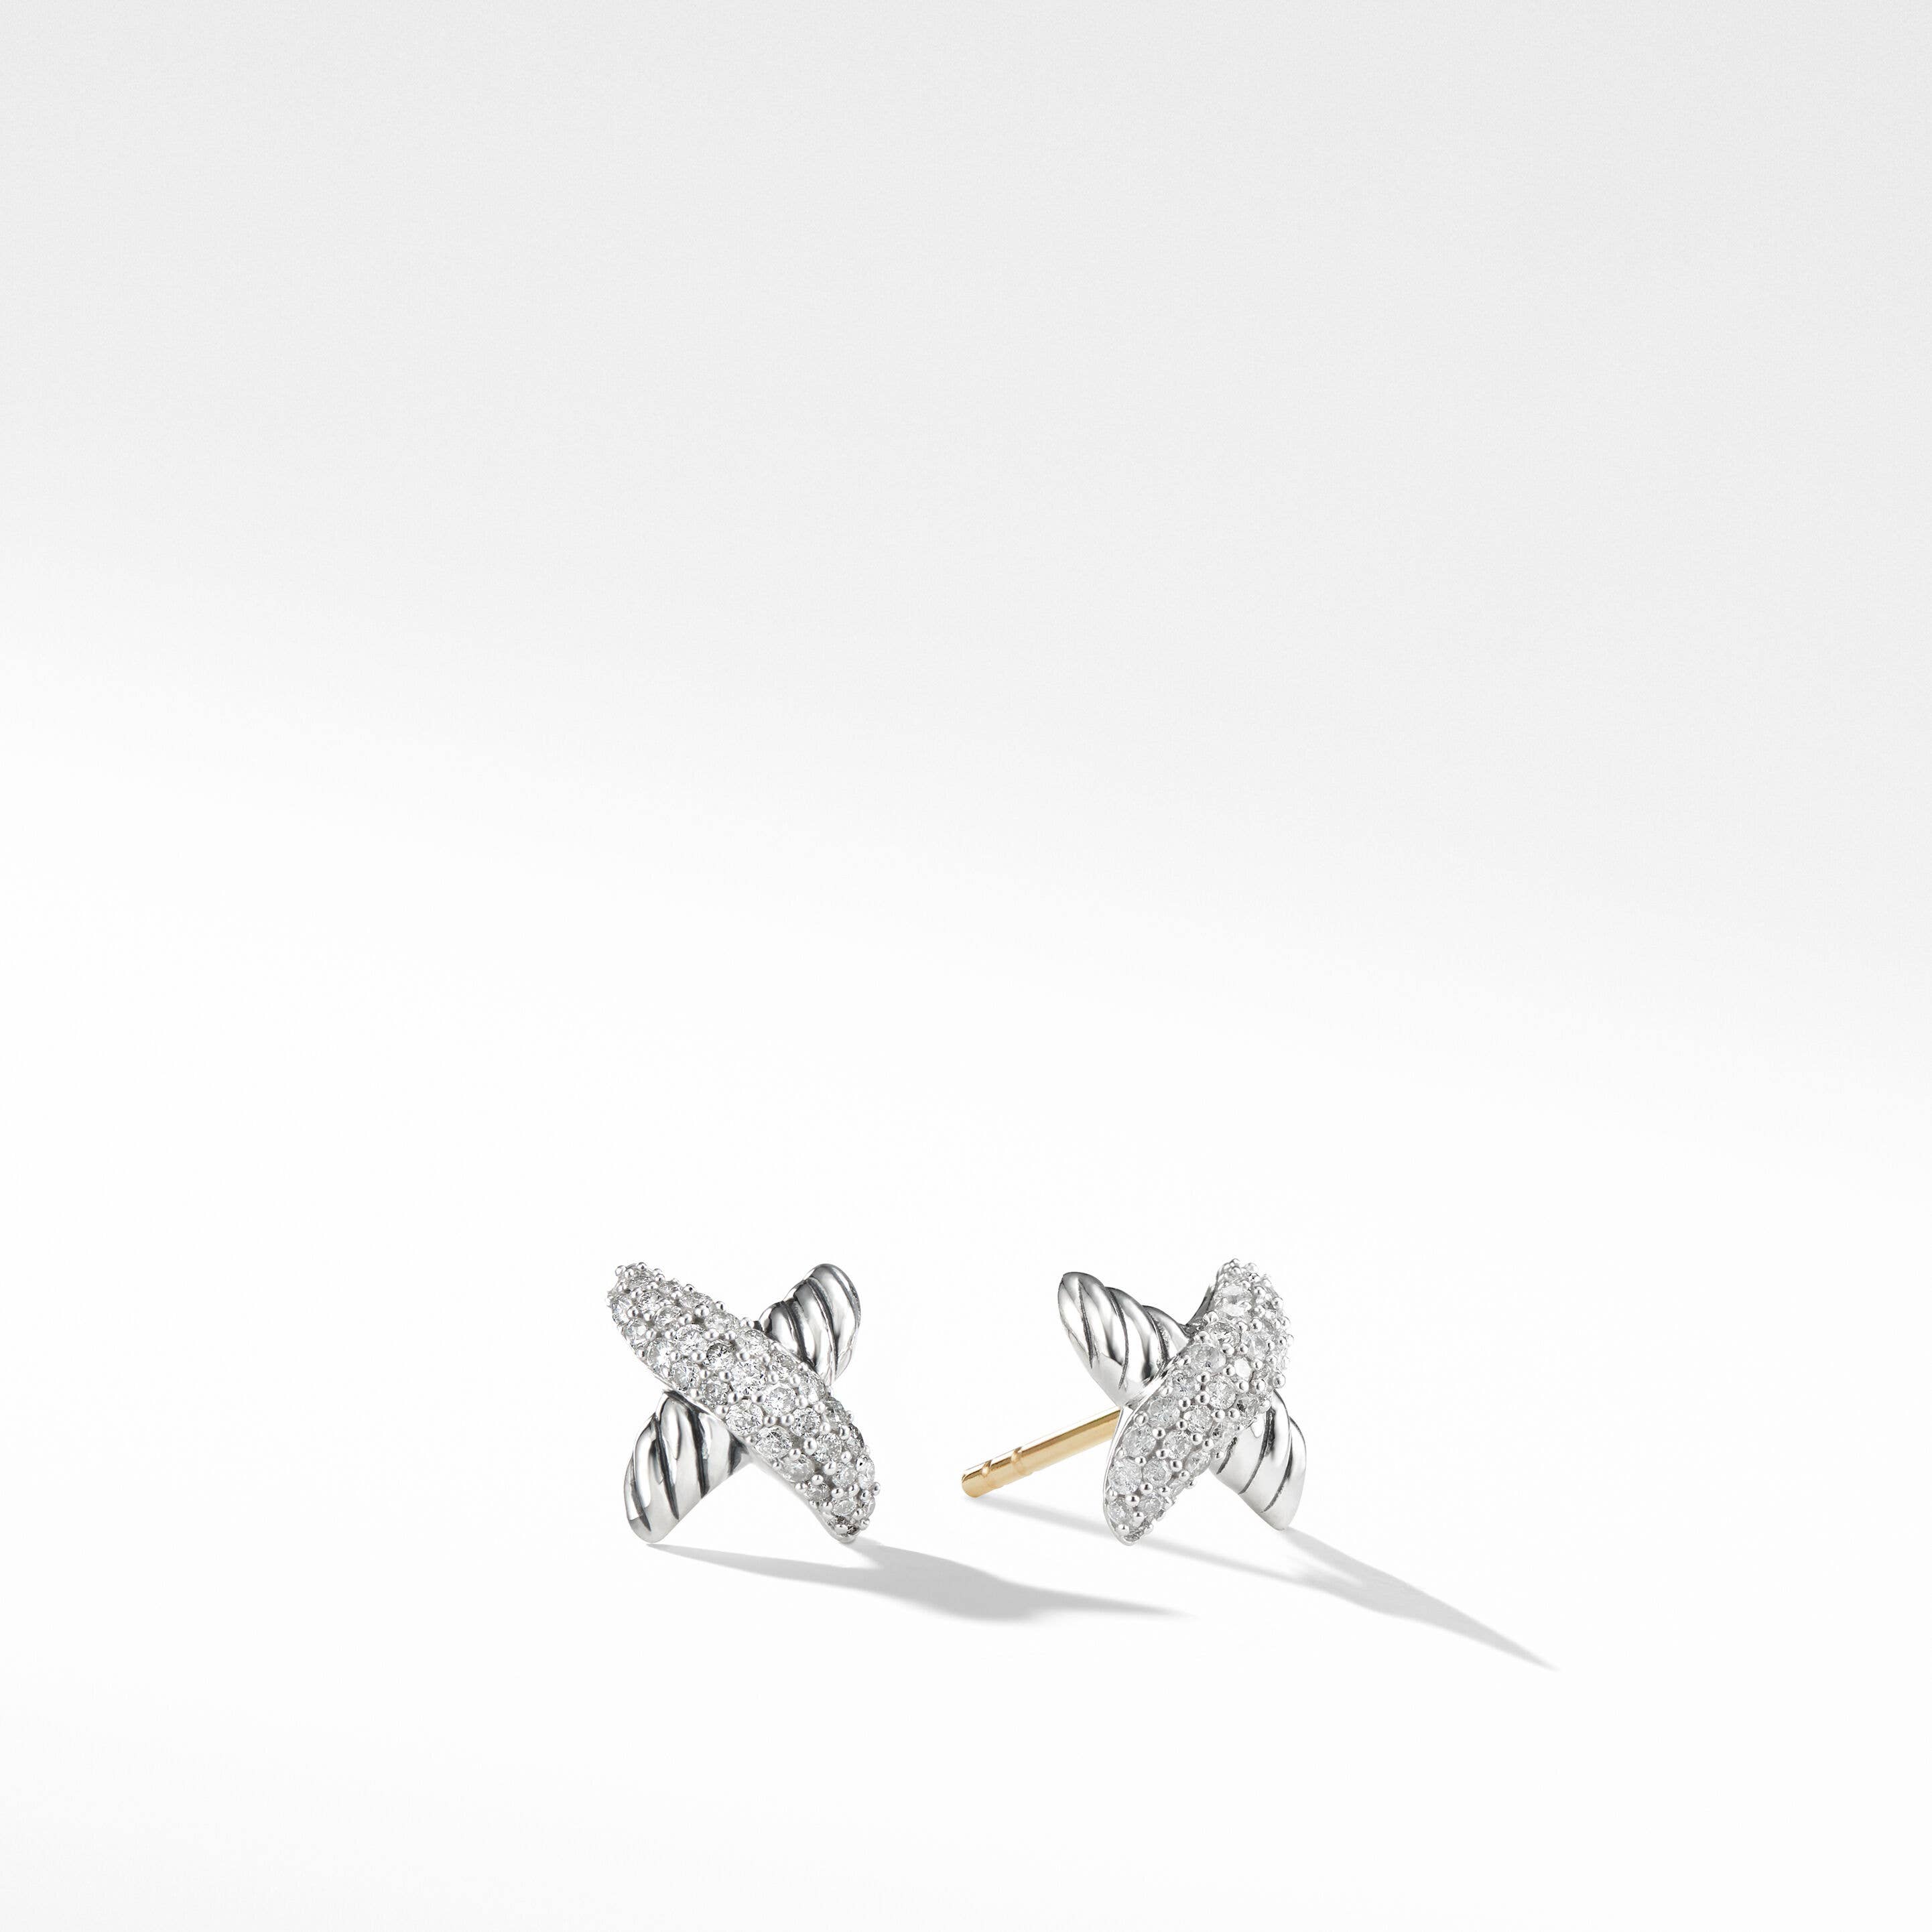 Petite X Stud Earrings with Pavé Diamonds